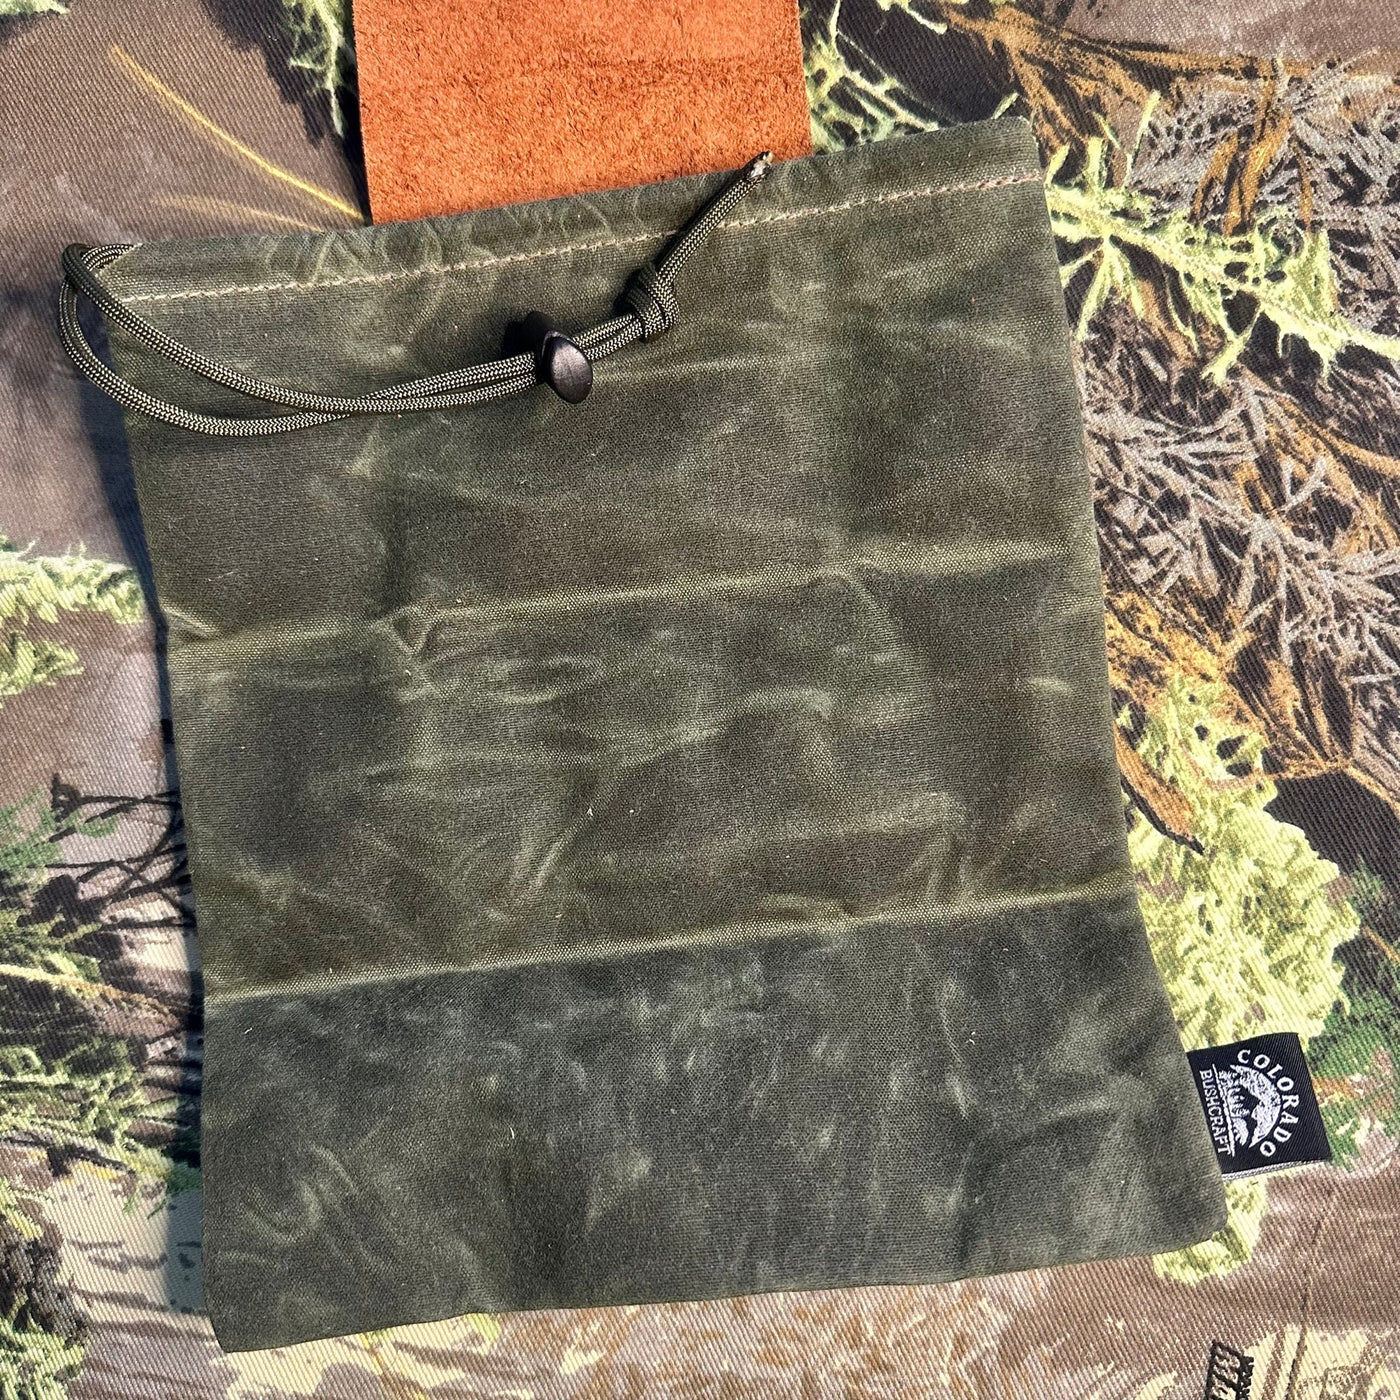 Leather Bushcraft Foraging Pouch Gathering Bag Dump Sack Folding Pocket Leather (Kodiak /Olive)